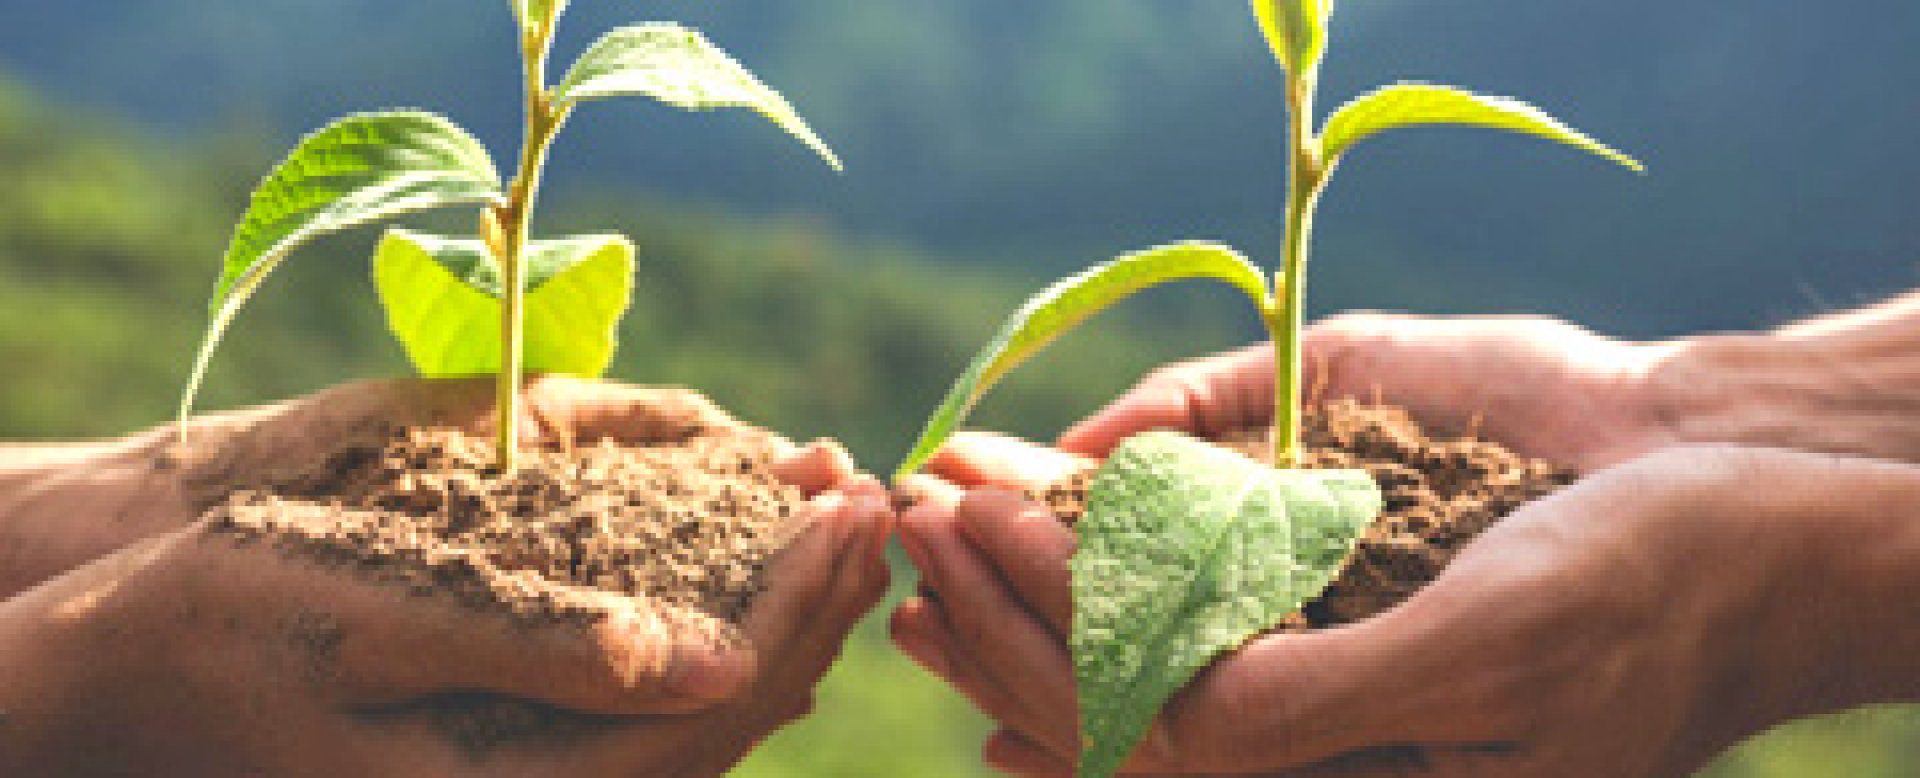 Училища и граждани се включват в кампанията „Засади дърво“ - E-Burgas.com